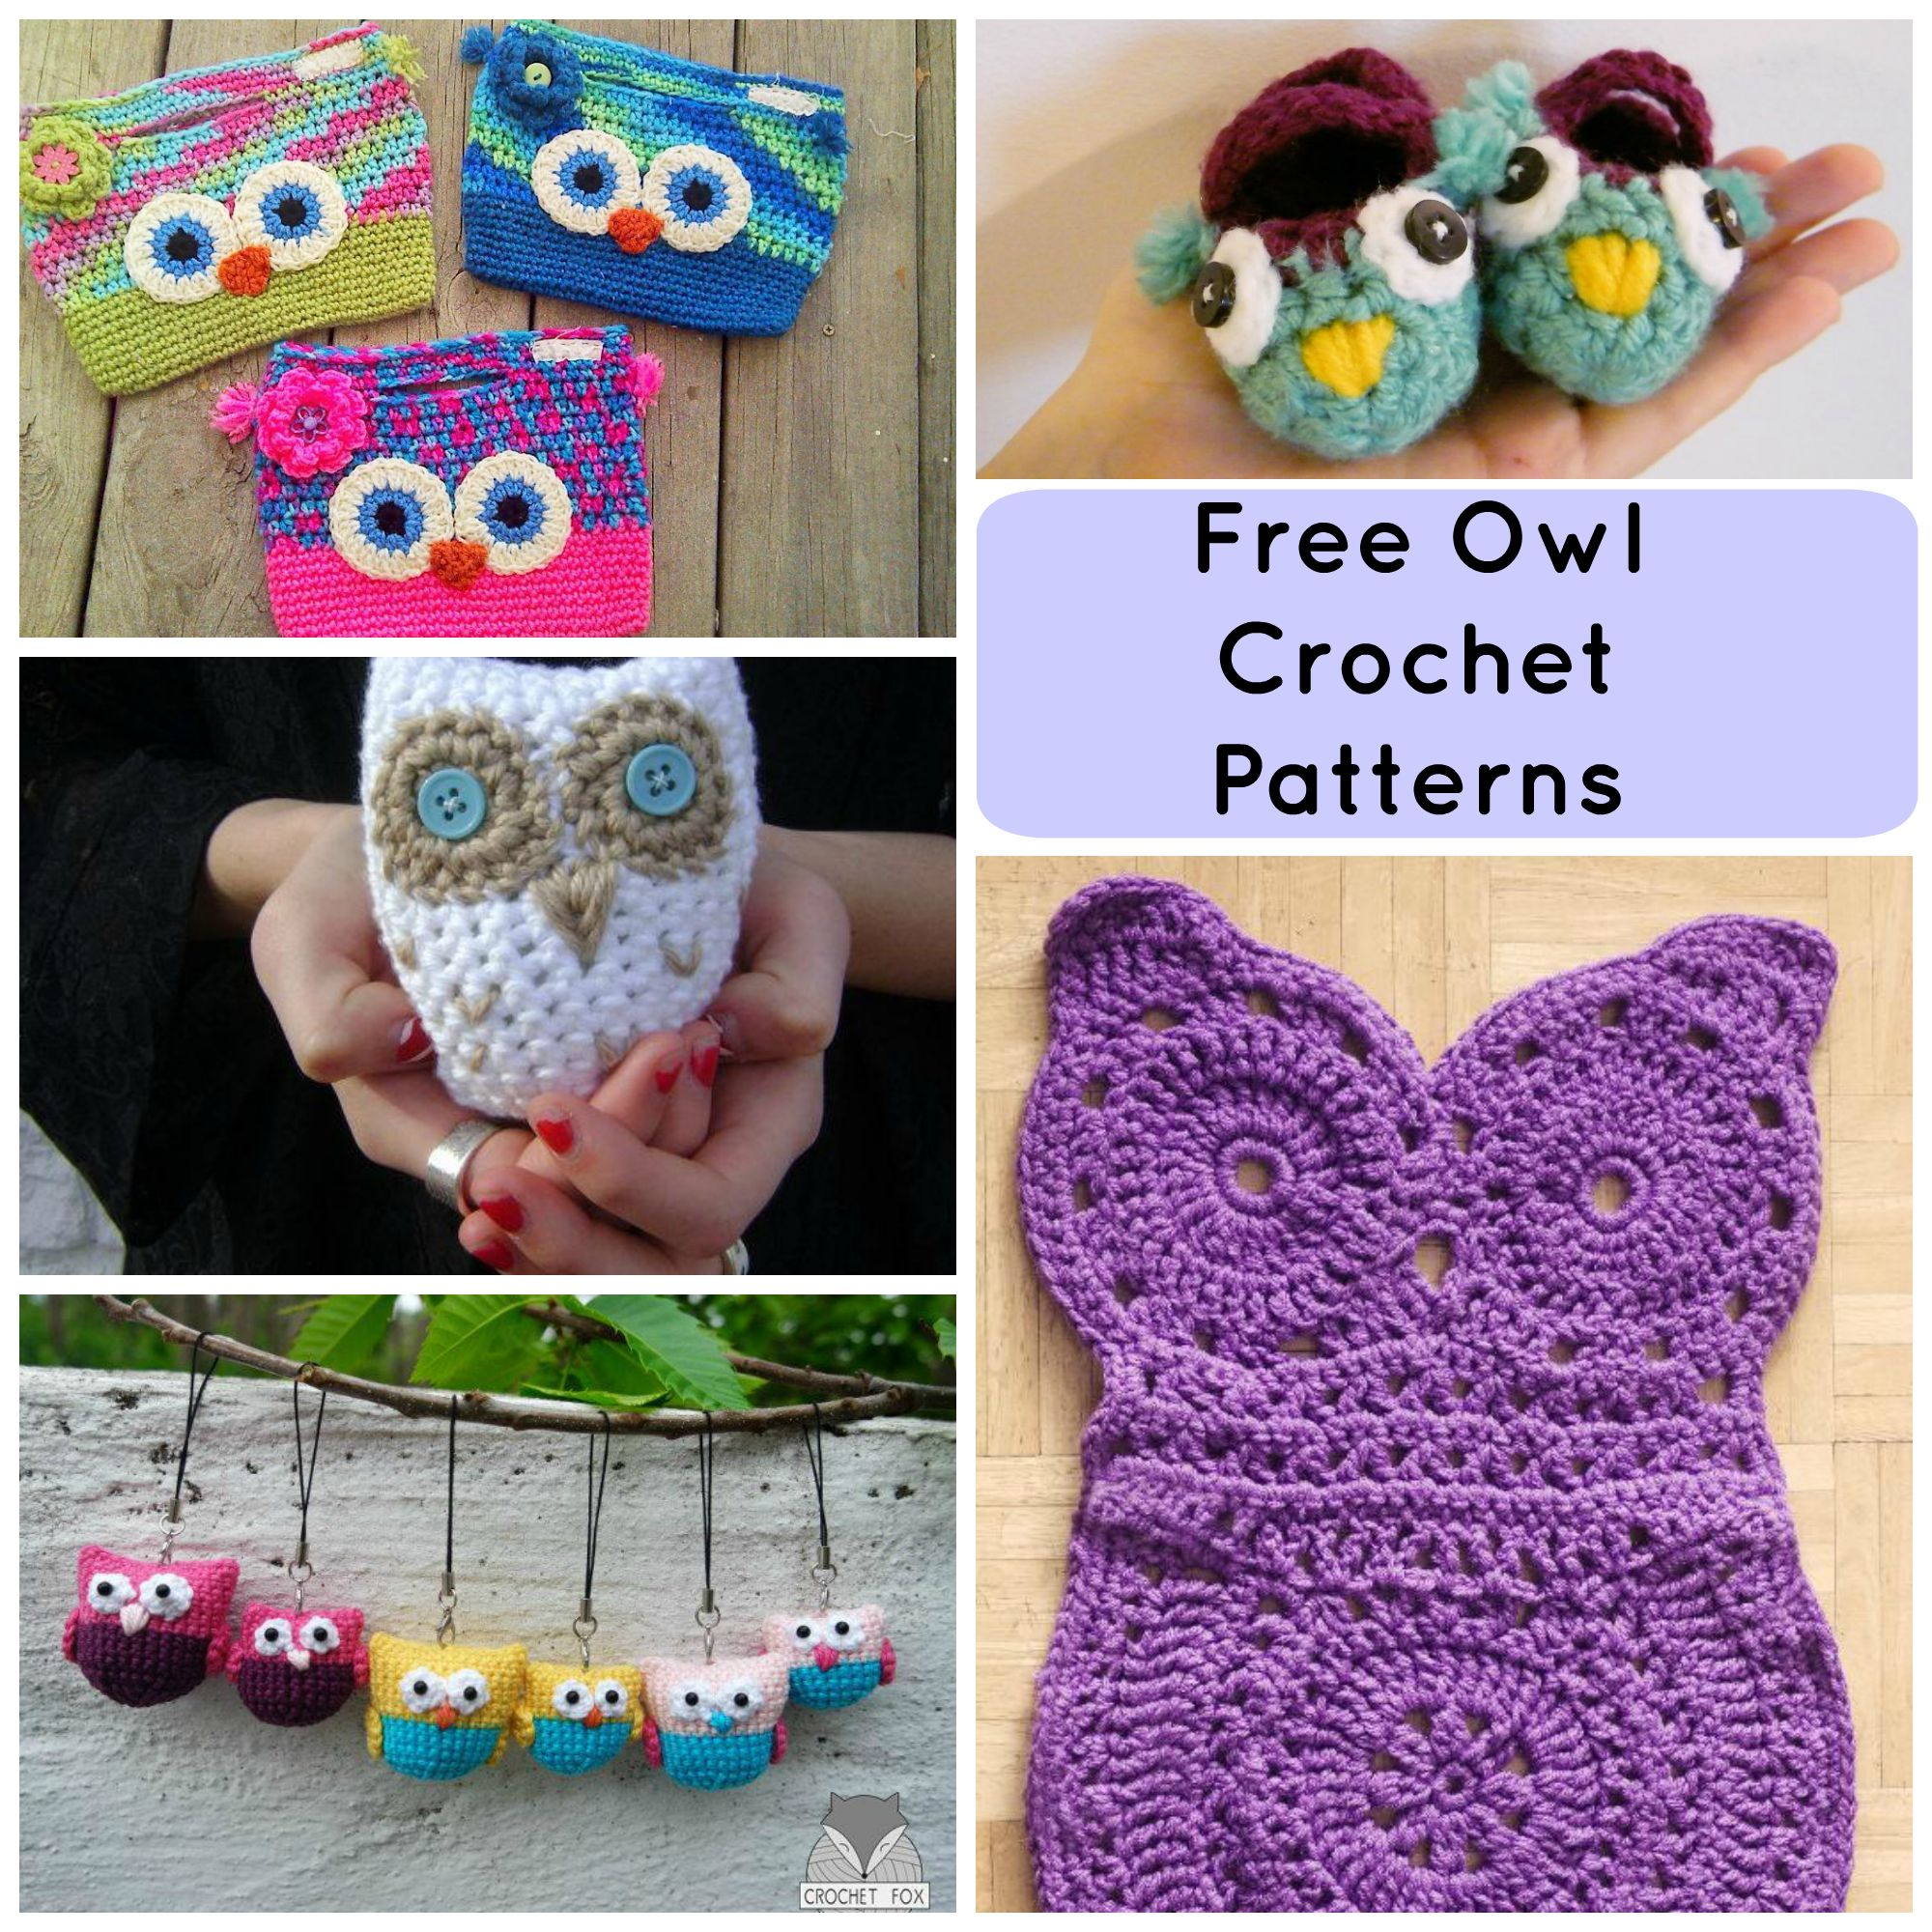 Free Owl Crochet Pattern 7 Hoot Worthy Free Crochet Owl Patterns